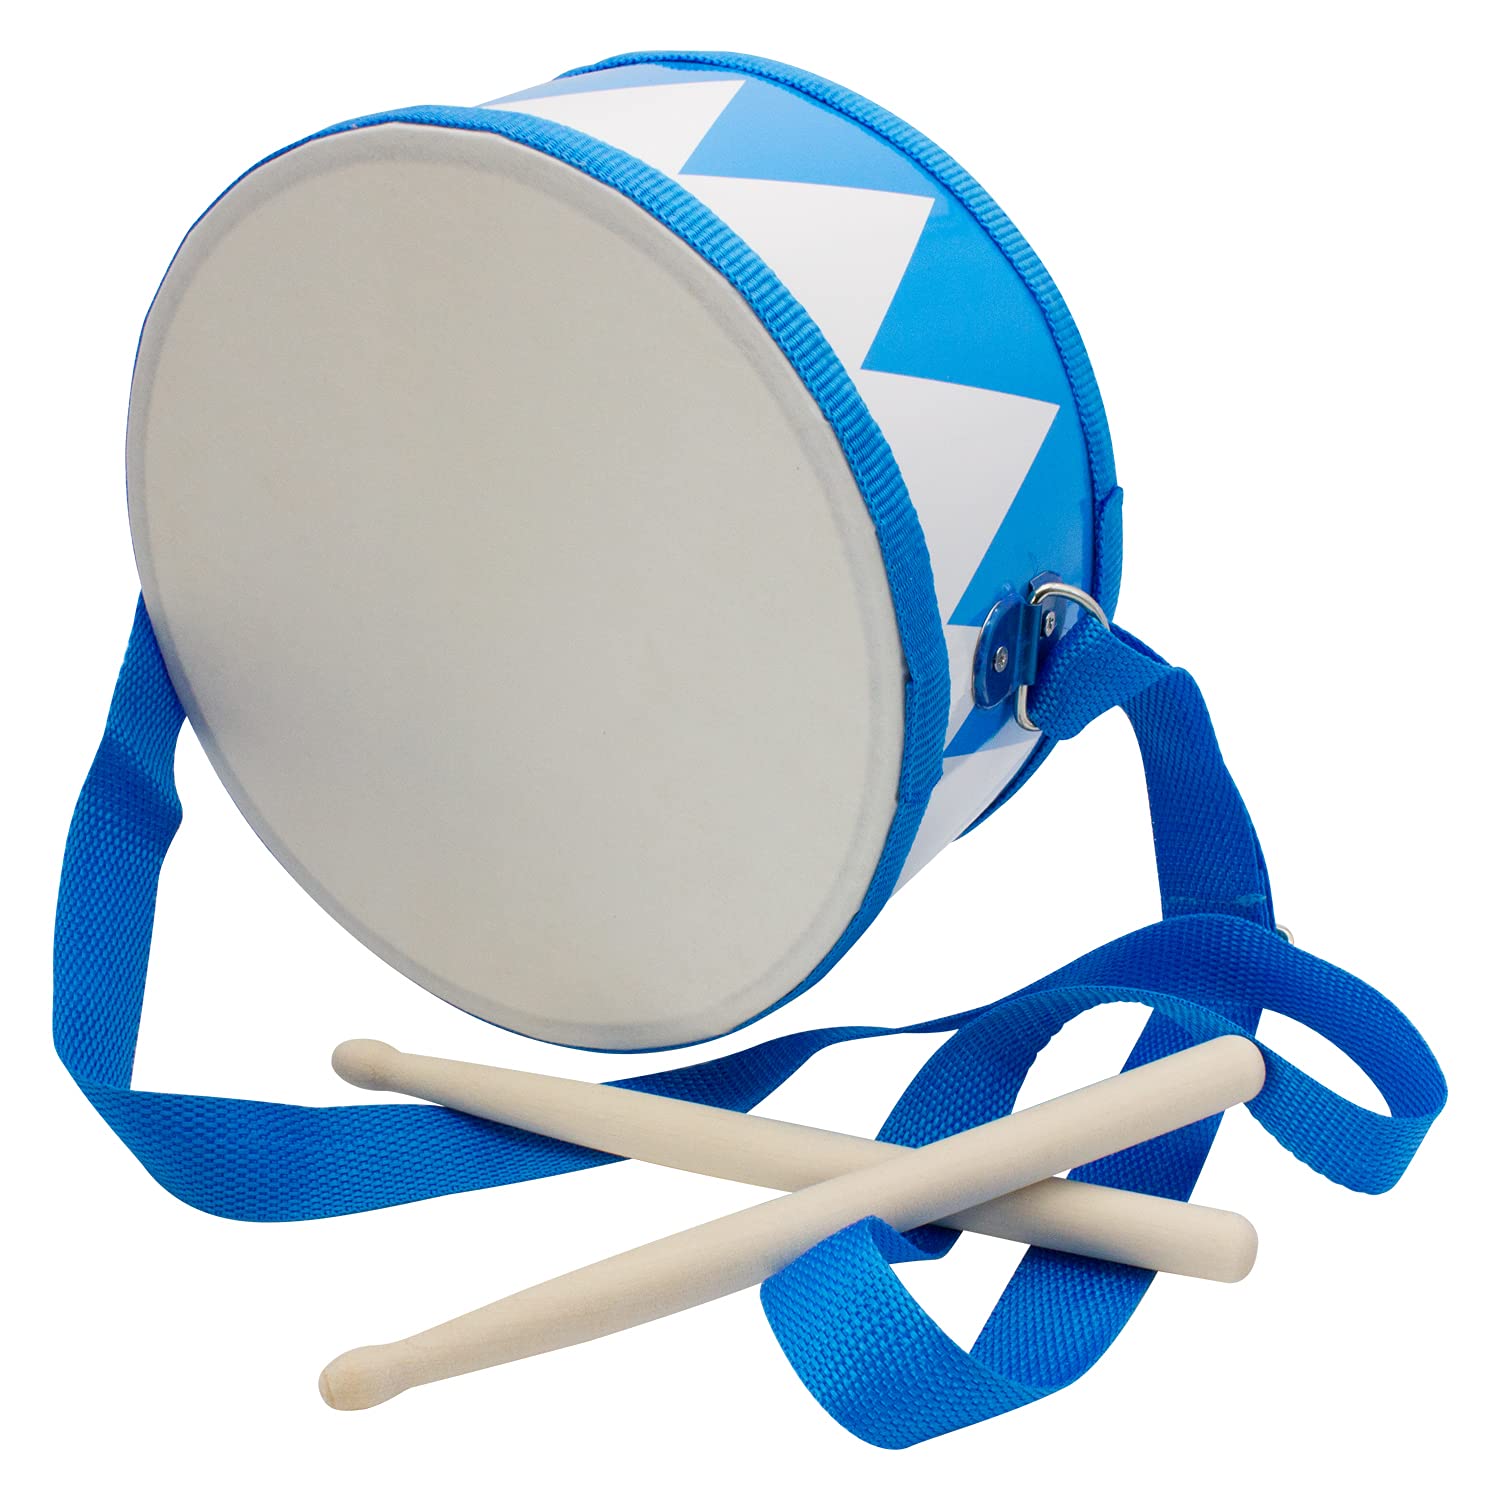 Trommel für Kinder blau-weiss Musikinstrument aus Holz mit Trageriemen und Sticks D: 20 cm- 3845